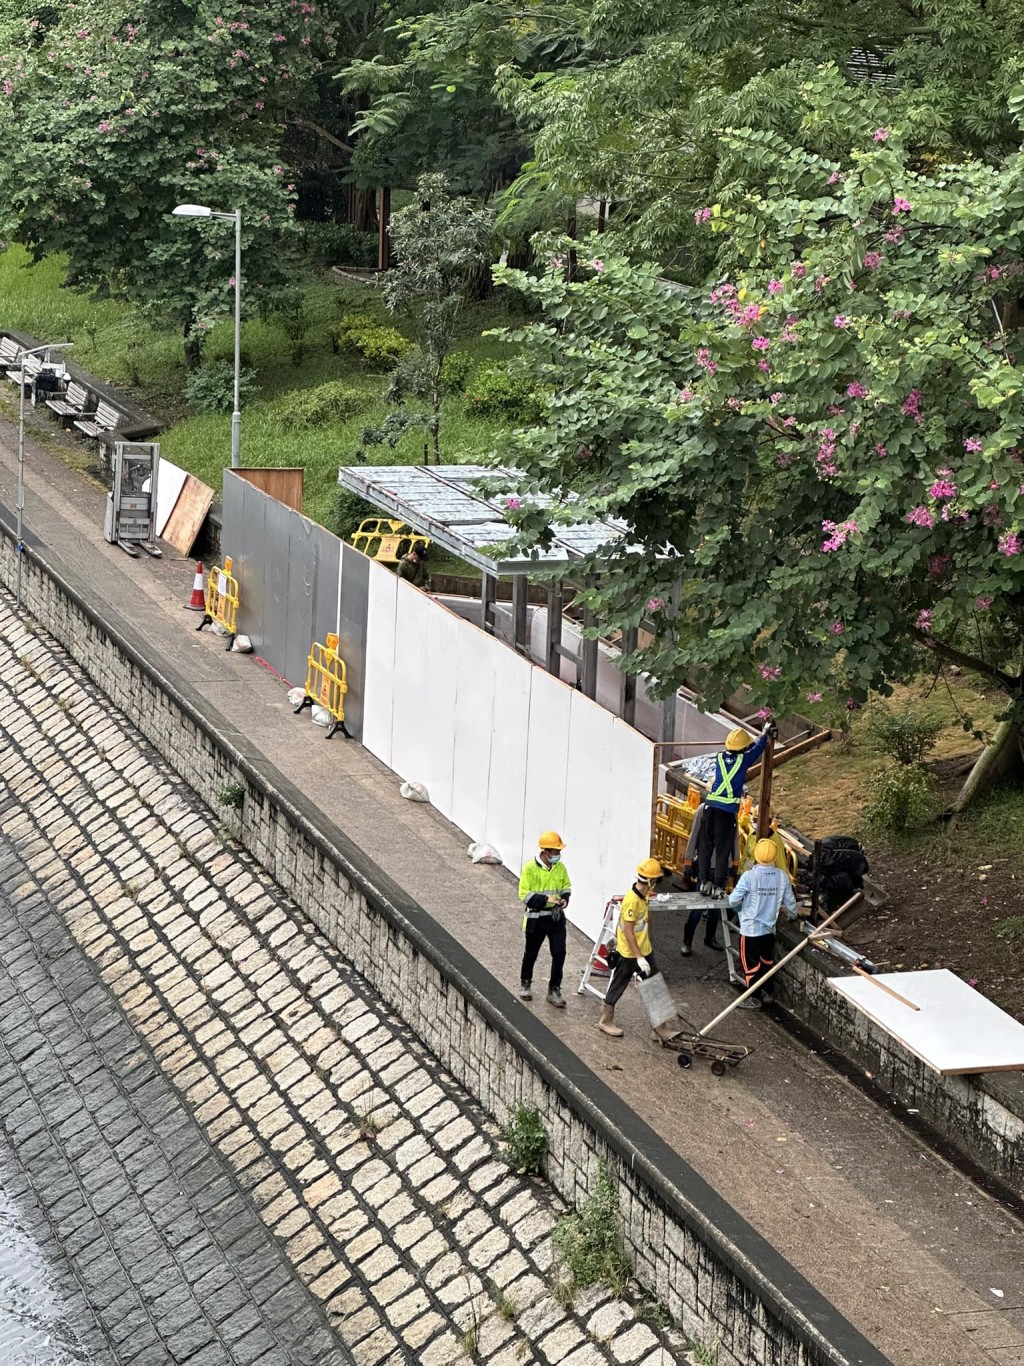 有大埔街坊发现运作仅约1个月的列车造型避雨亭已被围封。「大埔 TAI PO」群组